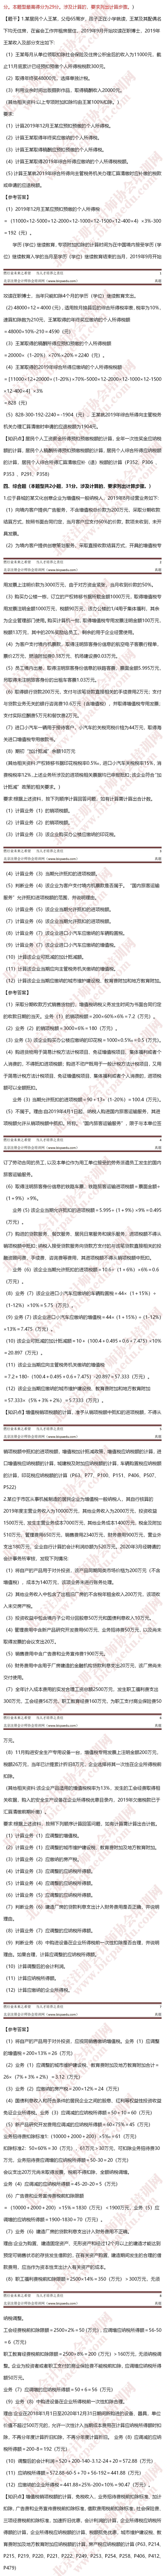 2020年注册会计师考试11号税法1 -crop.jpg